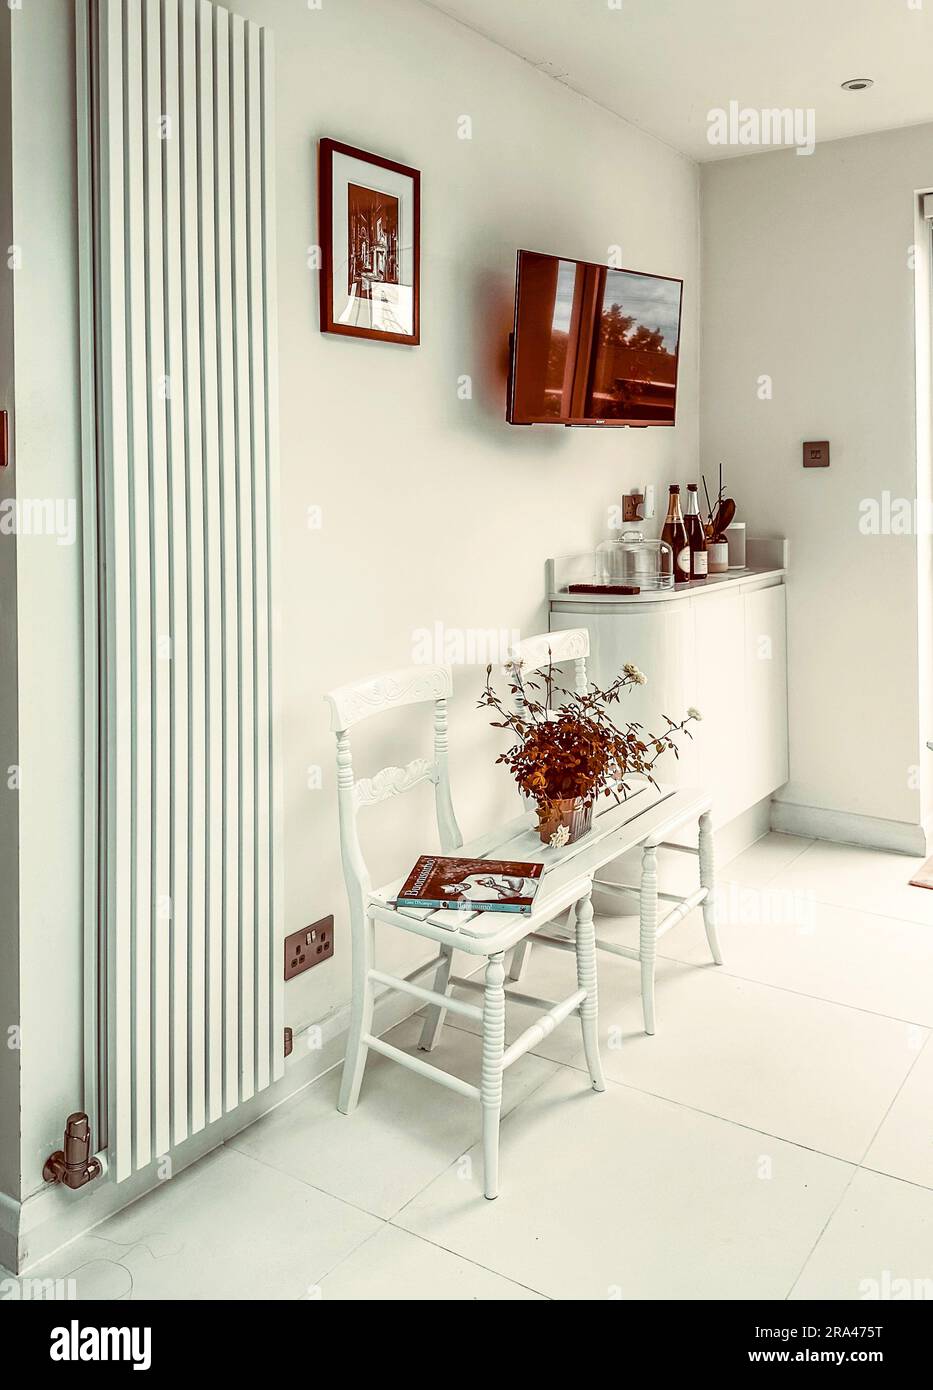 Une banquette réalisée en joignant deux chaises dans une cuisine moderne et contemporaine blanche. (Je n'ai aucune autorisation pour le livre dans l'image) Banque D'Images